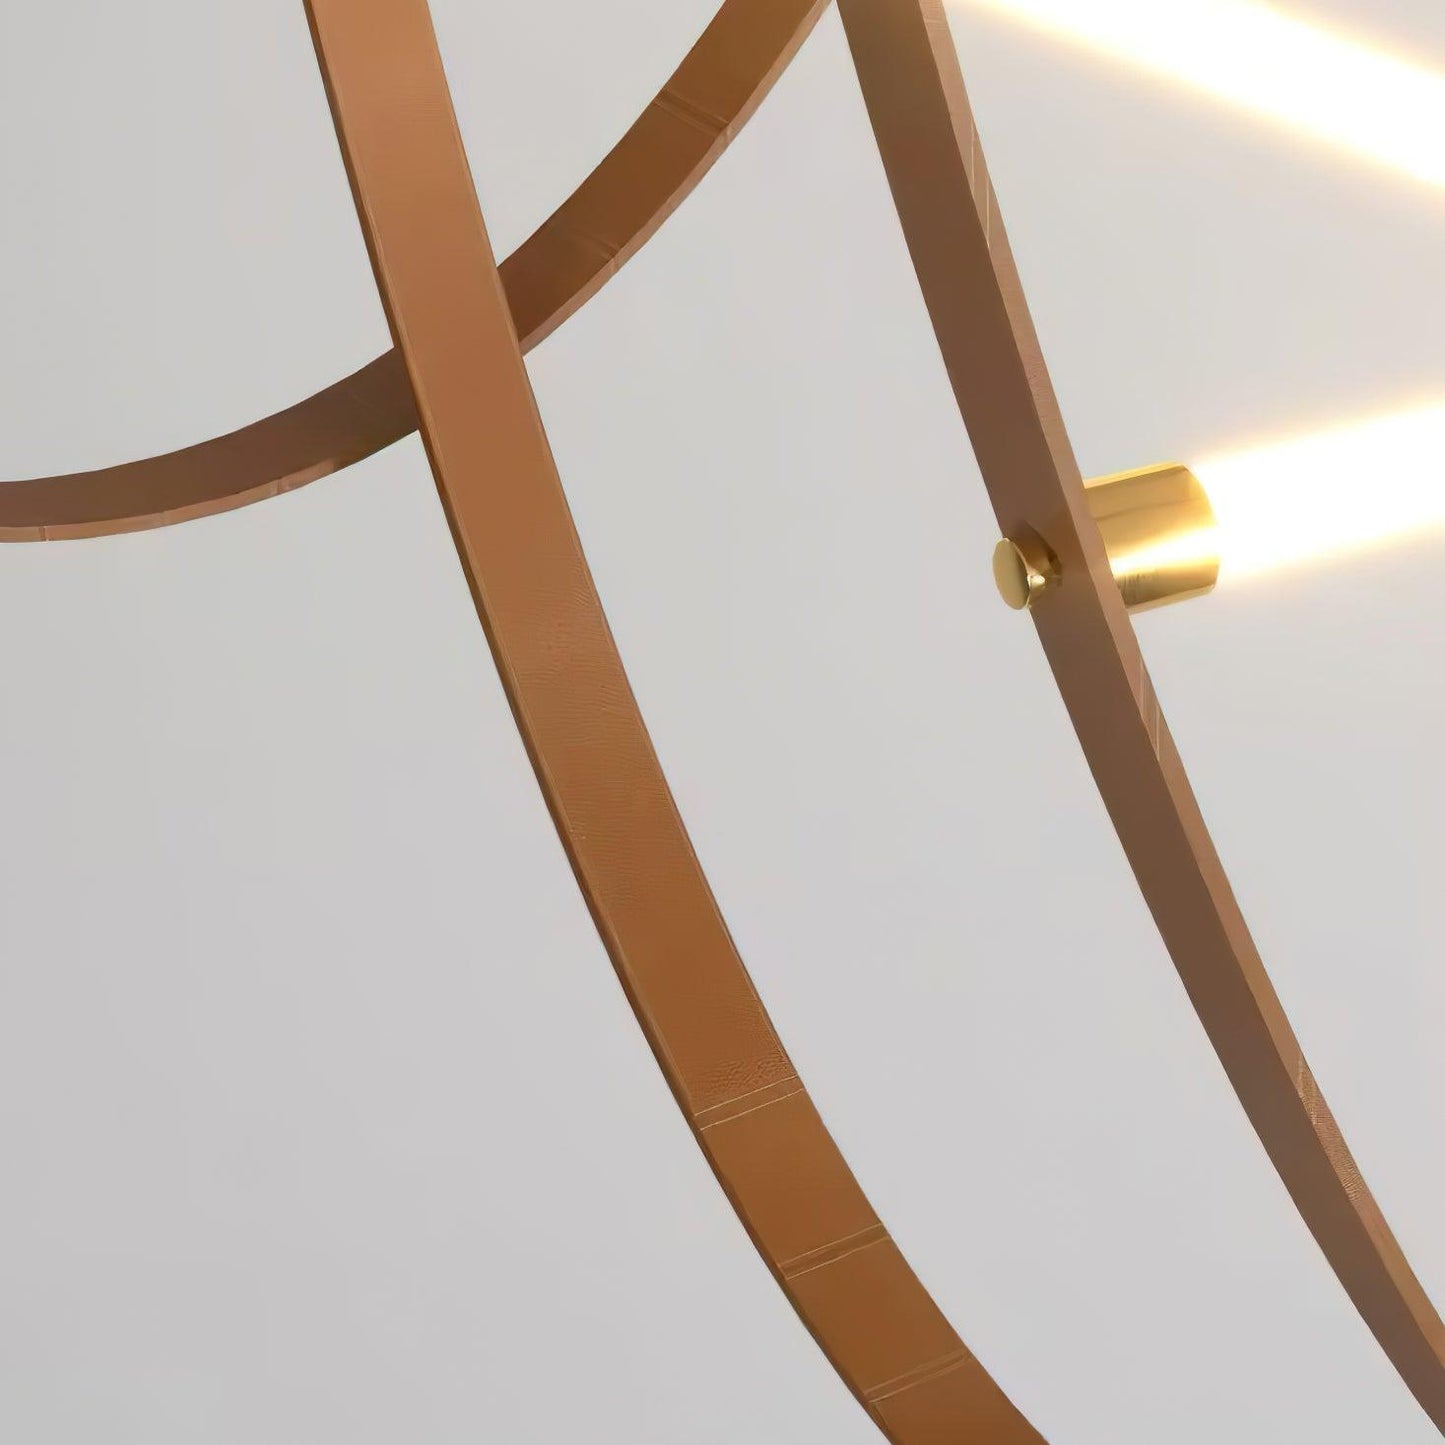 Tracer Belt Pendant Lamp